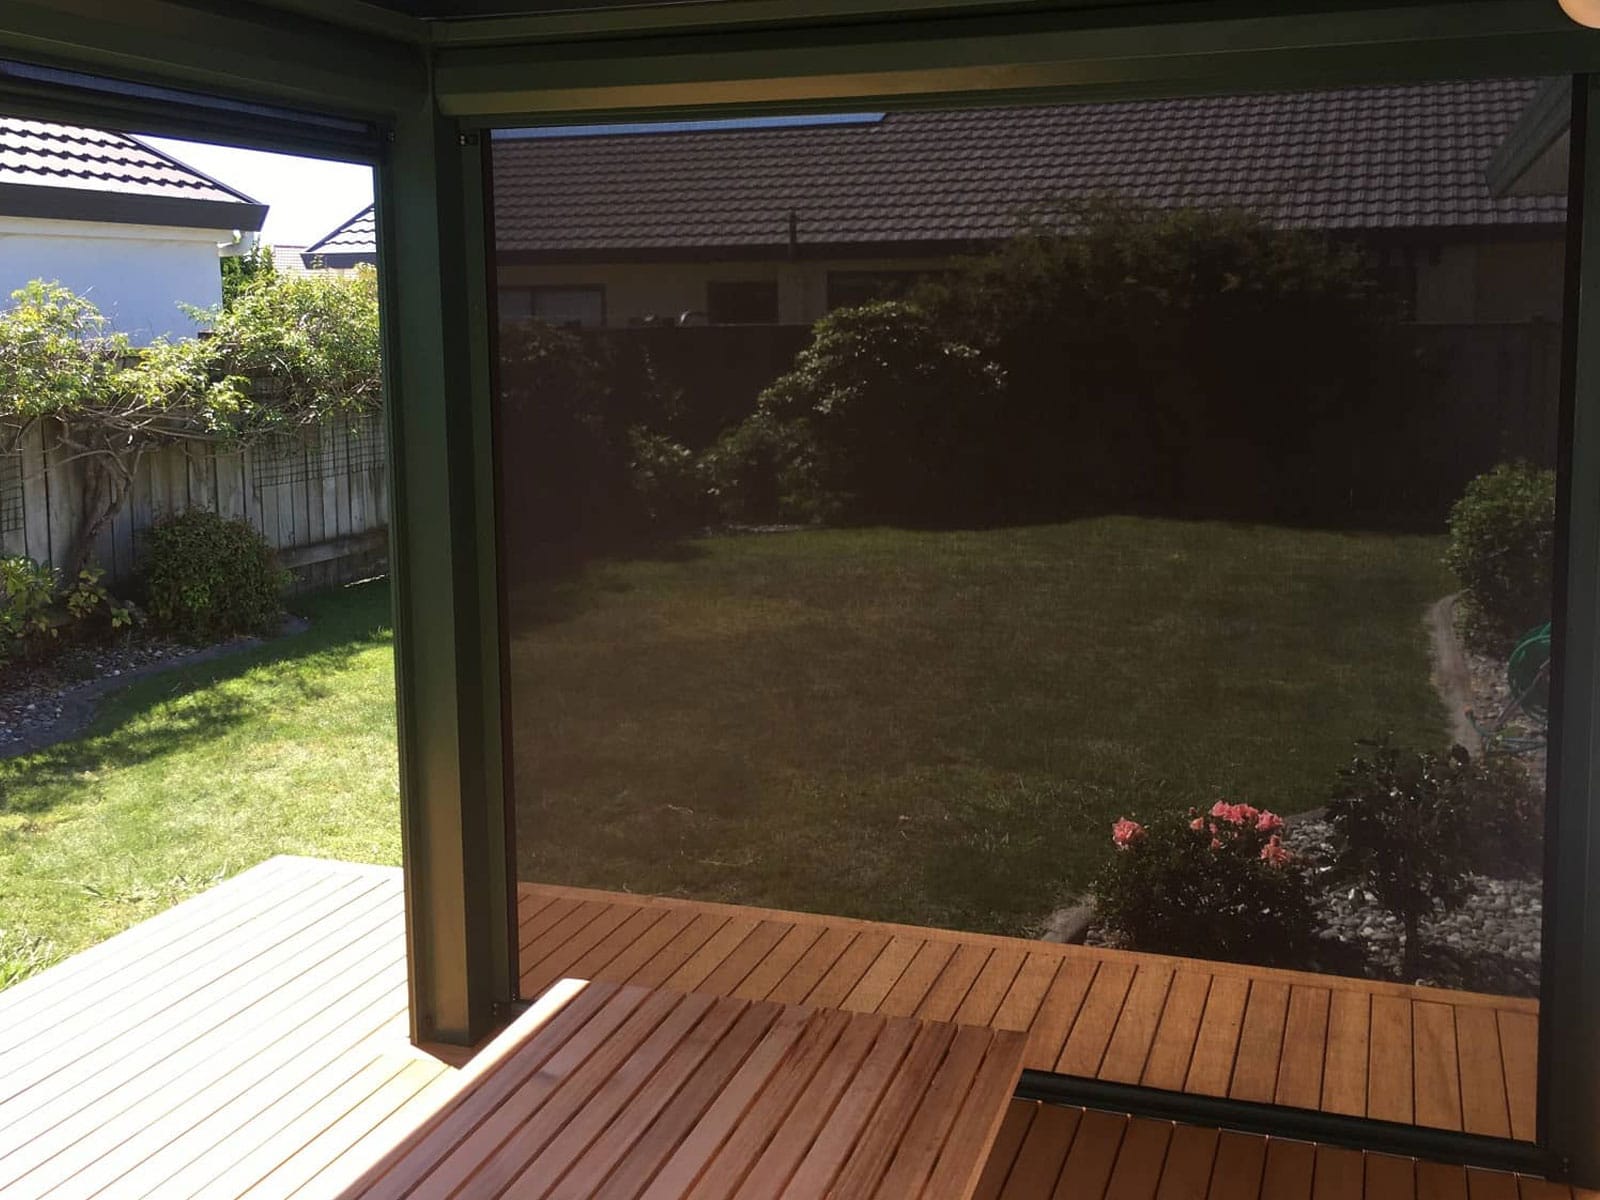 Outdoor blinds in residential garden